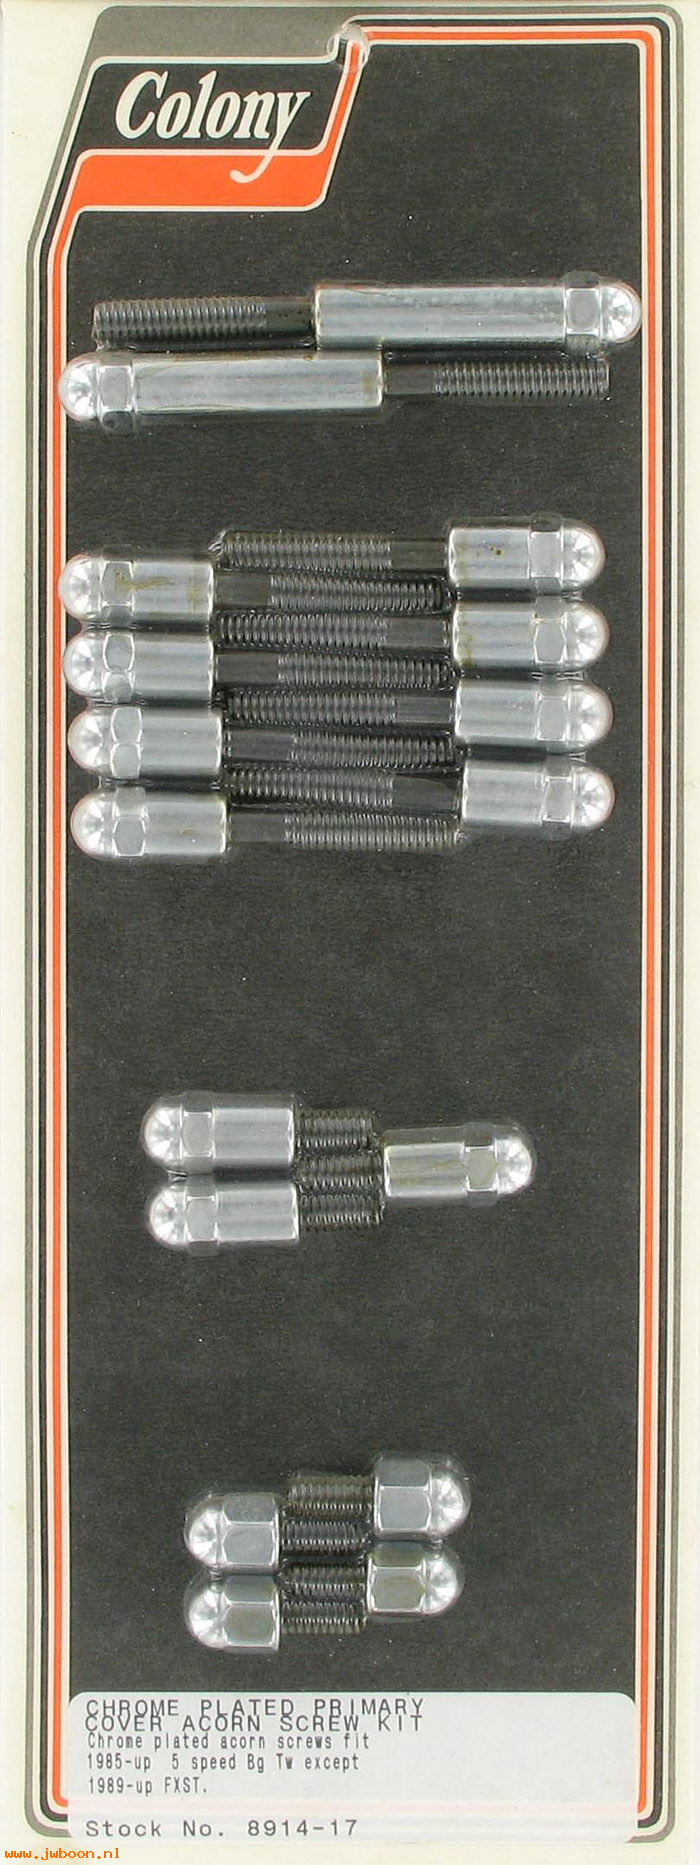 C 8914-17 (): Primary cover screw kit, acorn, in stock - FLT 85-99. FXR 85-